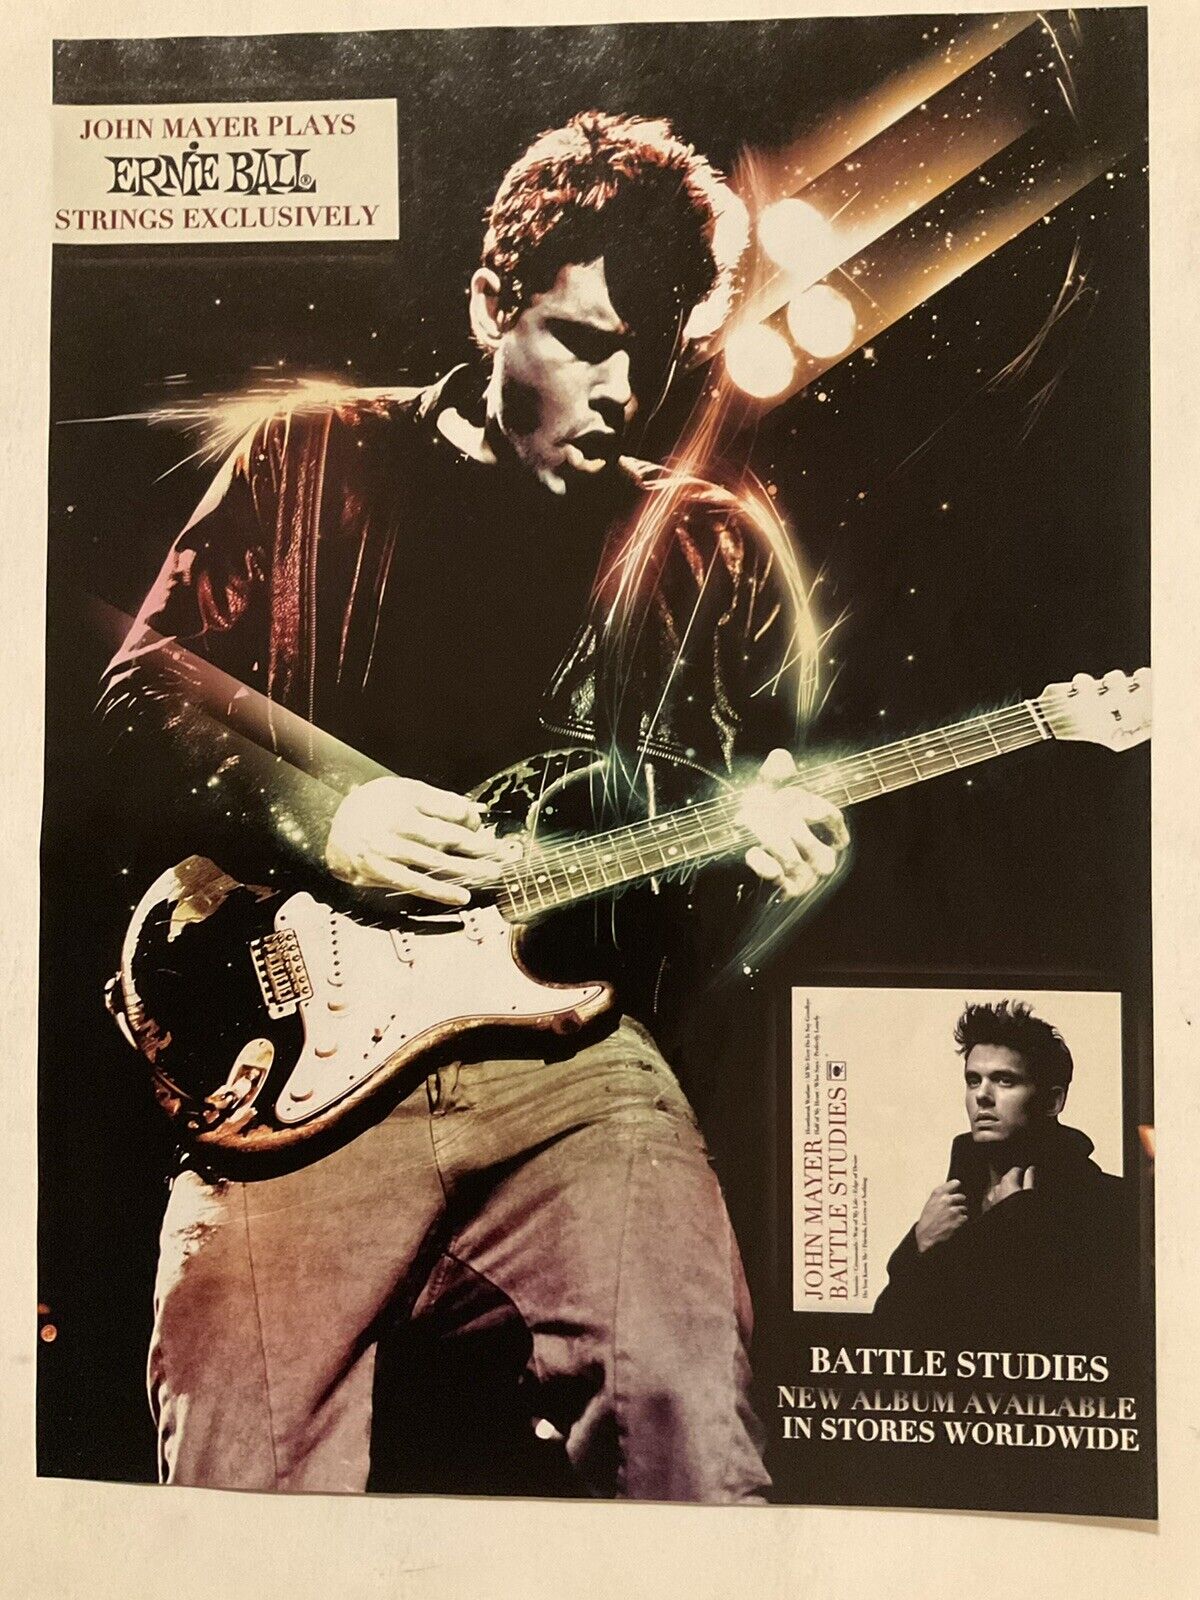 John Mayer Ernie Ball Guitar Strings Print Ad 2010 Battle Studies  Orig VTG 10-1